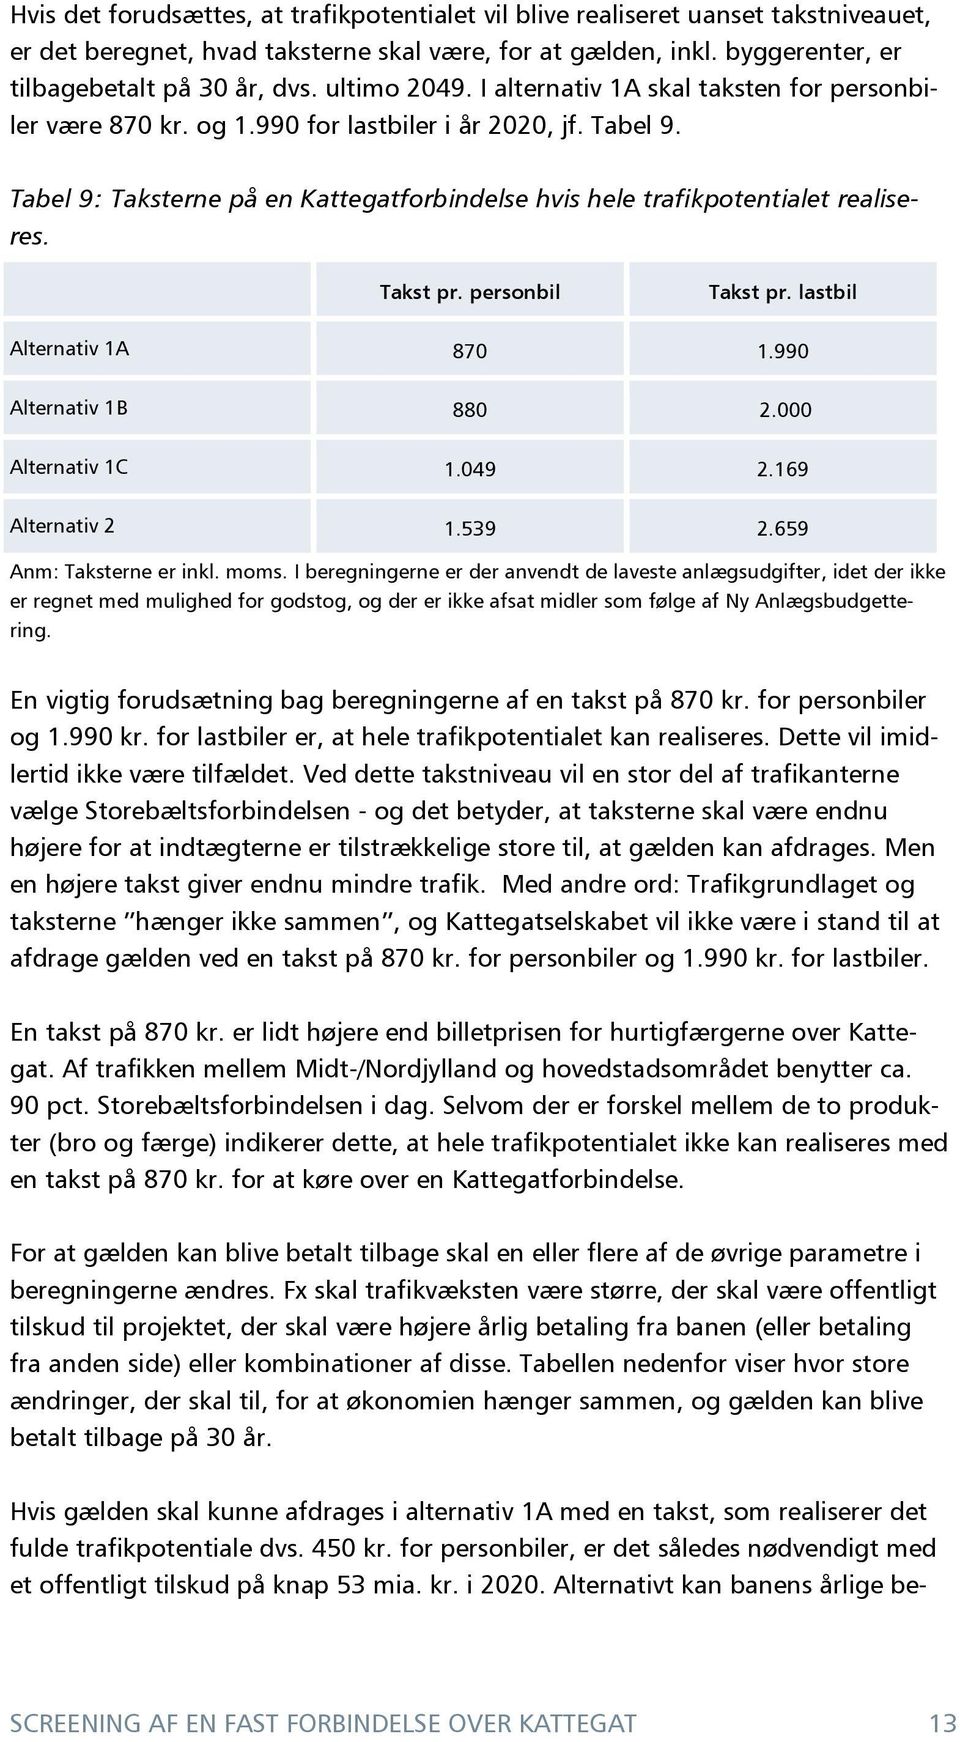 Tabel 9: Taksterne på en Kattegatforbindelse hvis hele trafikpotentialet realiseres. Takst pr. personbil Takst pr. lastbil Alternativ 1A 870 1.990 Alternativ 1B 880 2.000 Alternativ 1C 1.049 2.